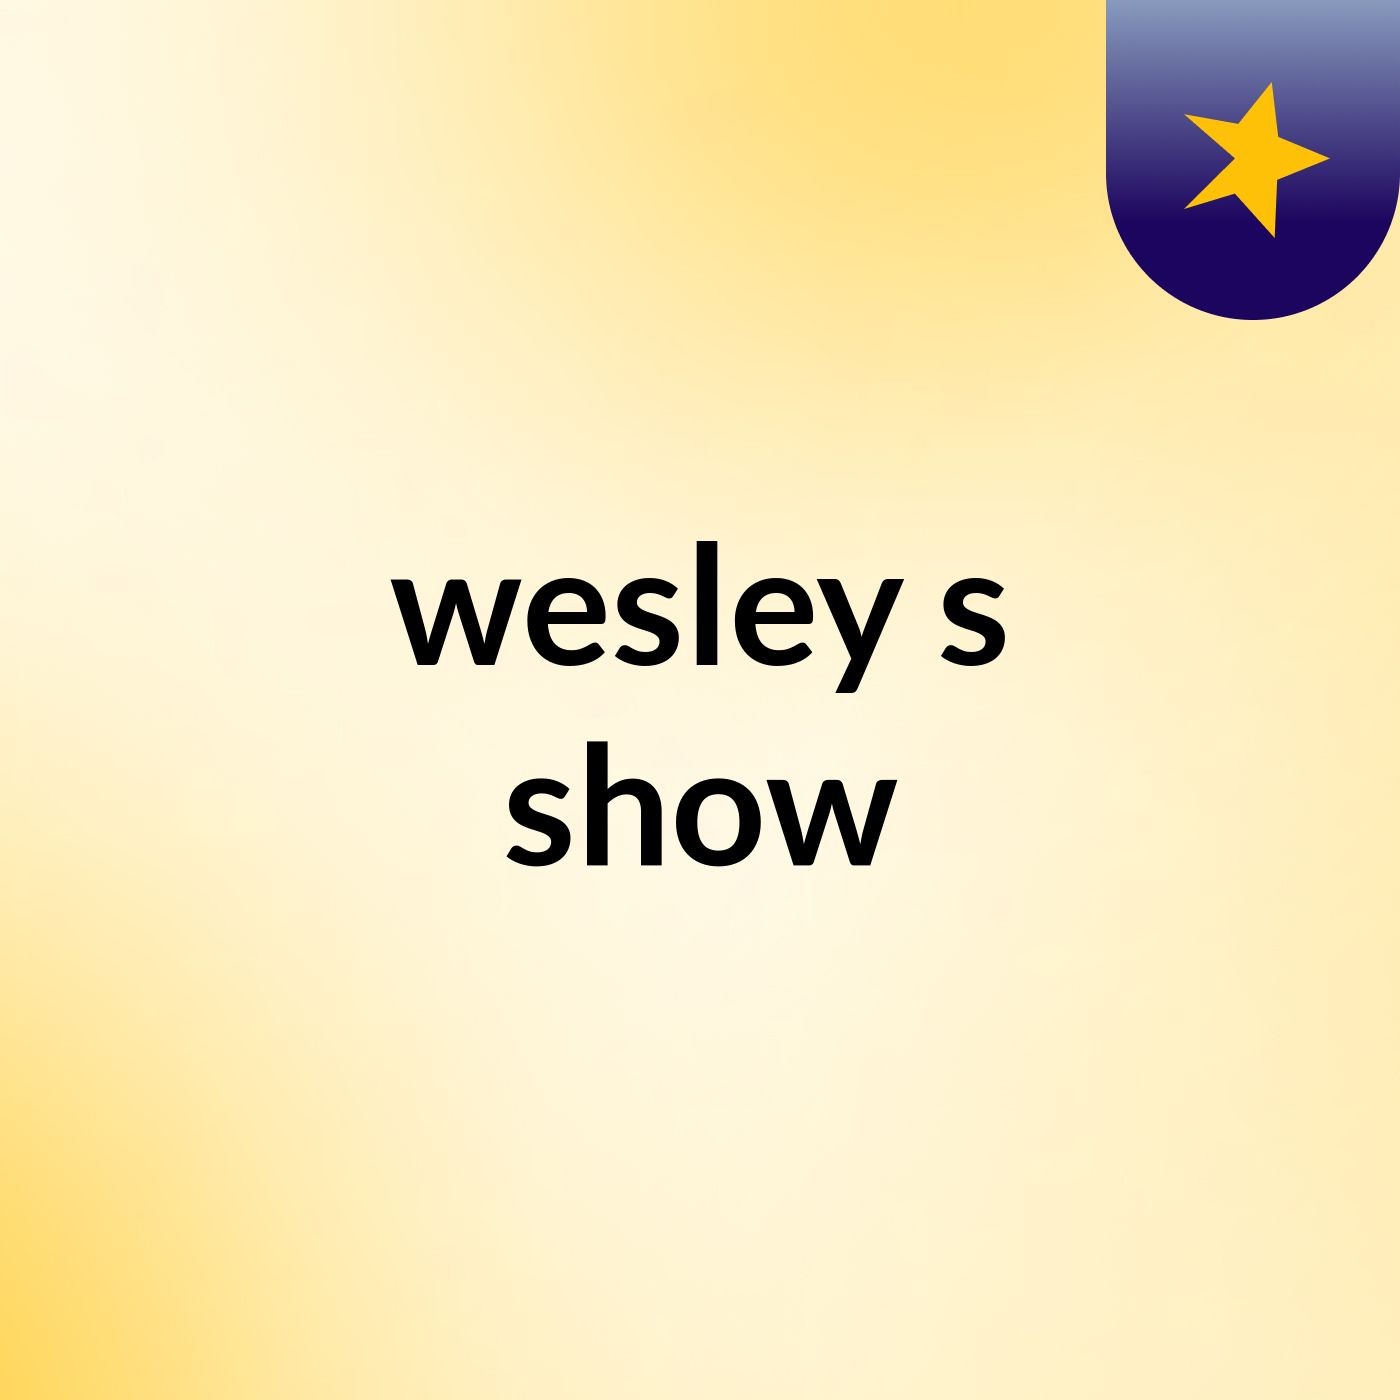 wesley's show